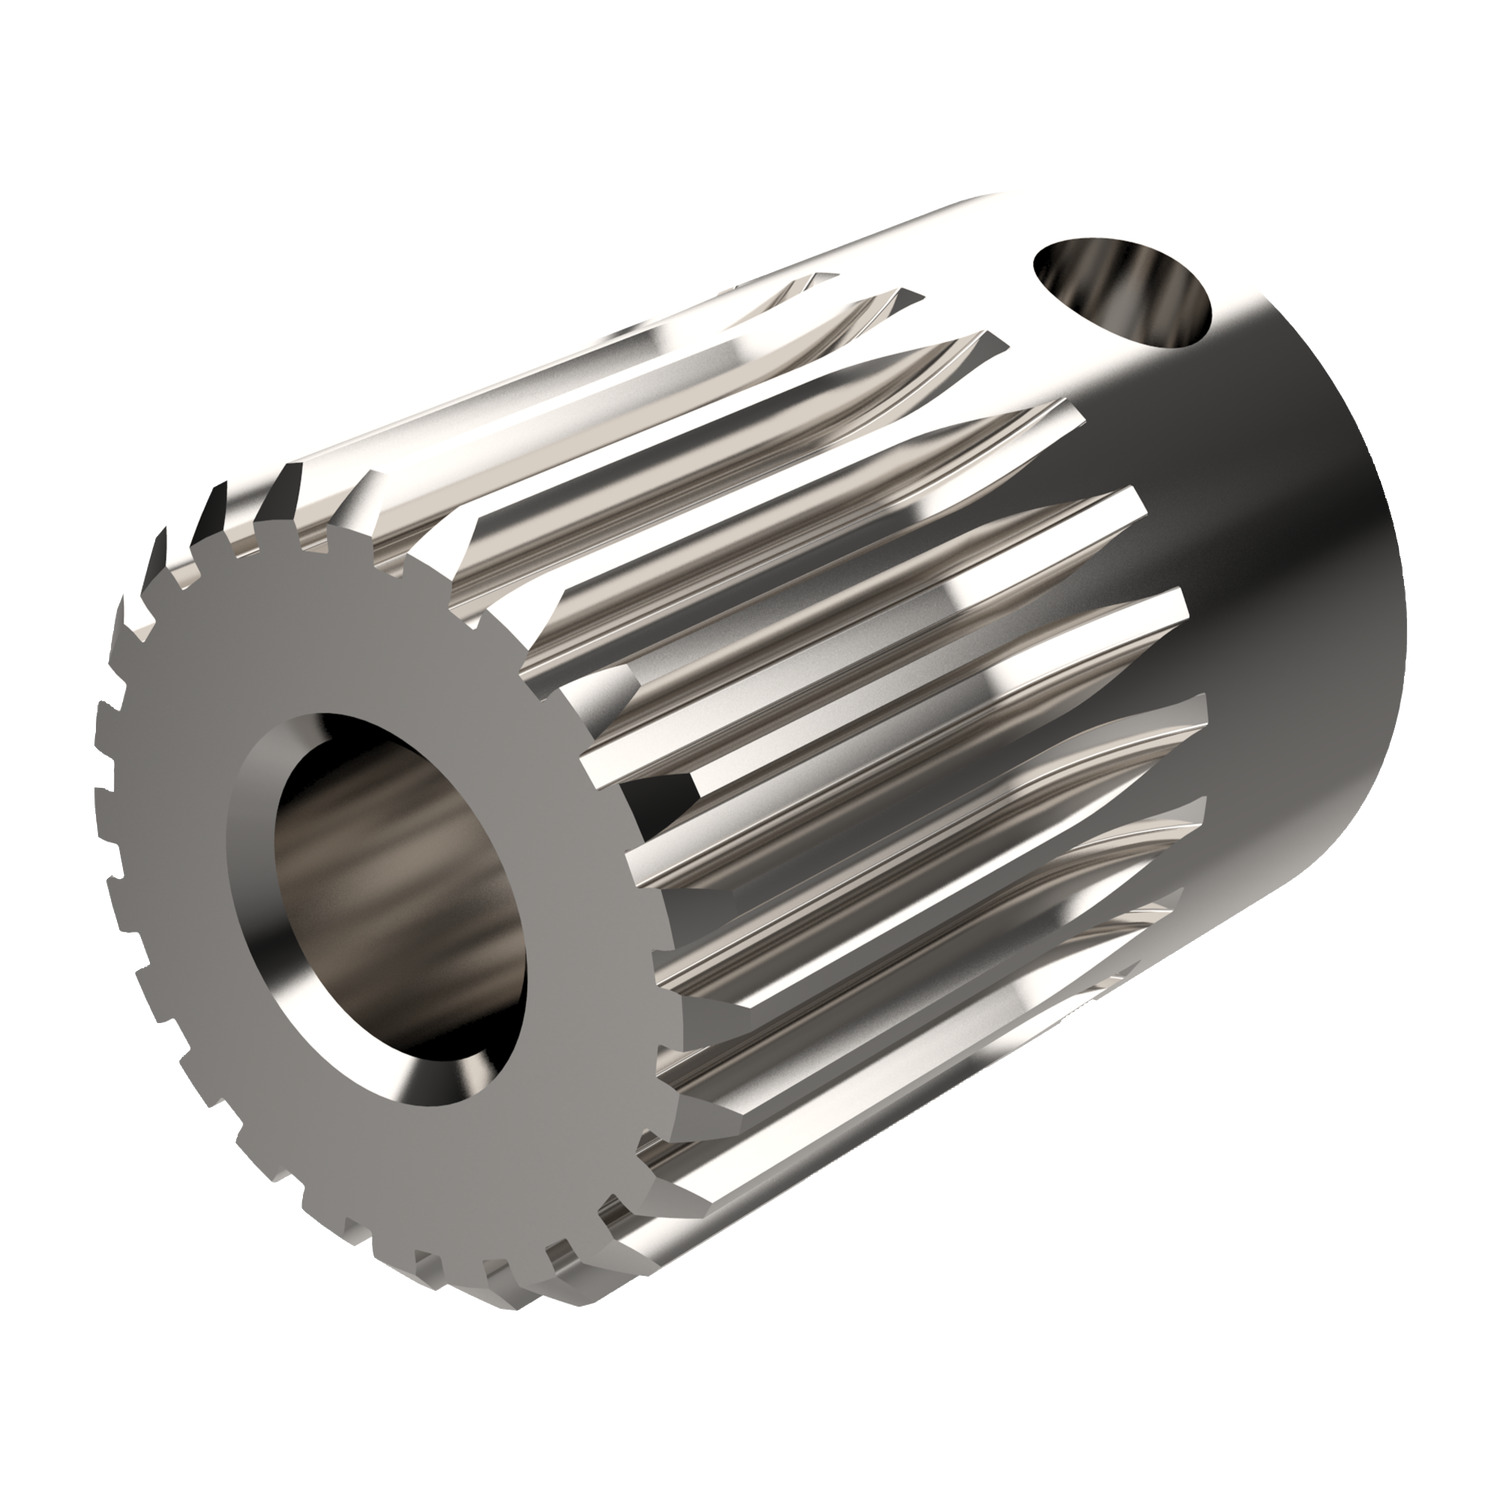 Product R5105, Spur Gears - Module 0.5 stainless steel - 16-30 teeth / 